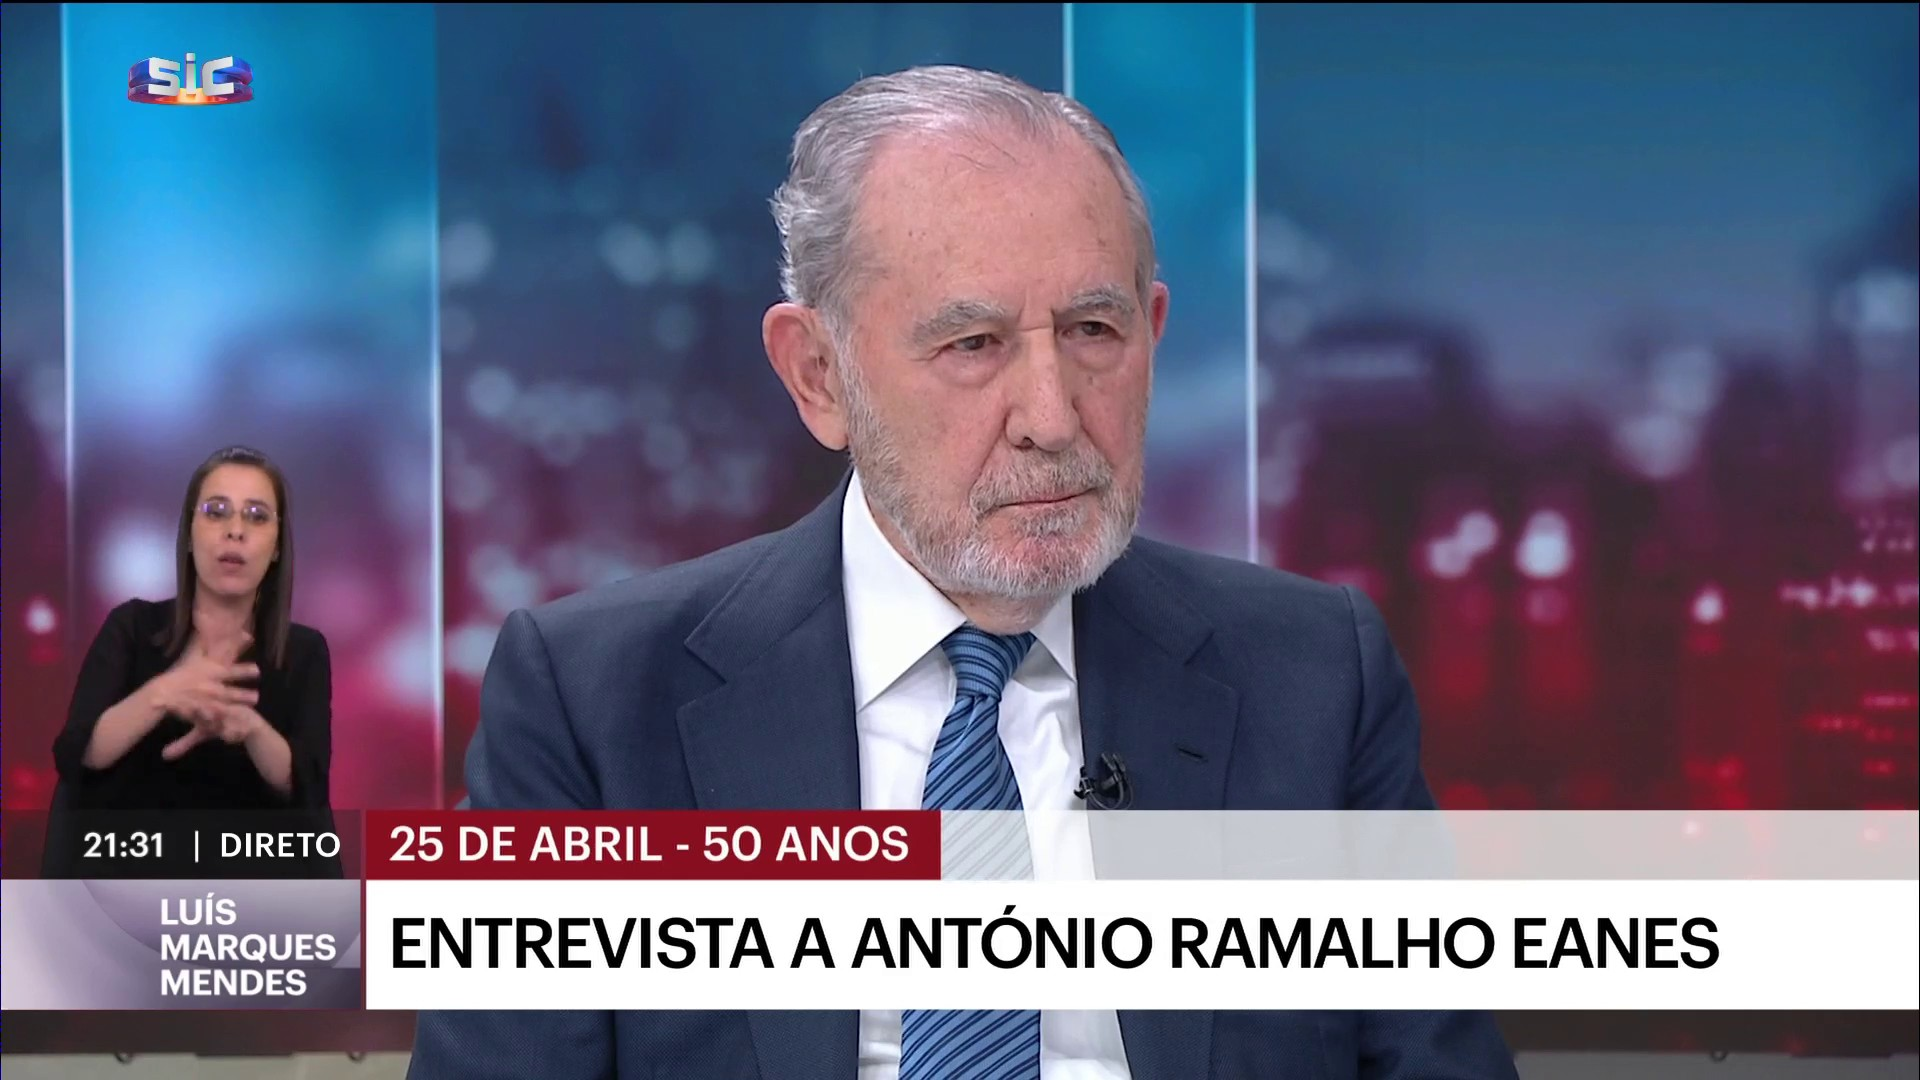 Entrevista a Ramalho Eanes: “É muito importante que os portugueses se debrucem sobre o que se conseguiu com o 25 de Abril, mas é mais importante que reflitam sobre o que querem que venha a ser o país”